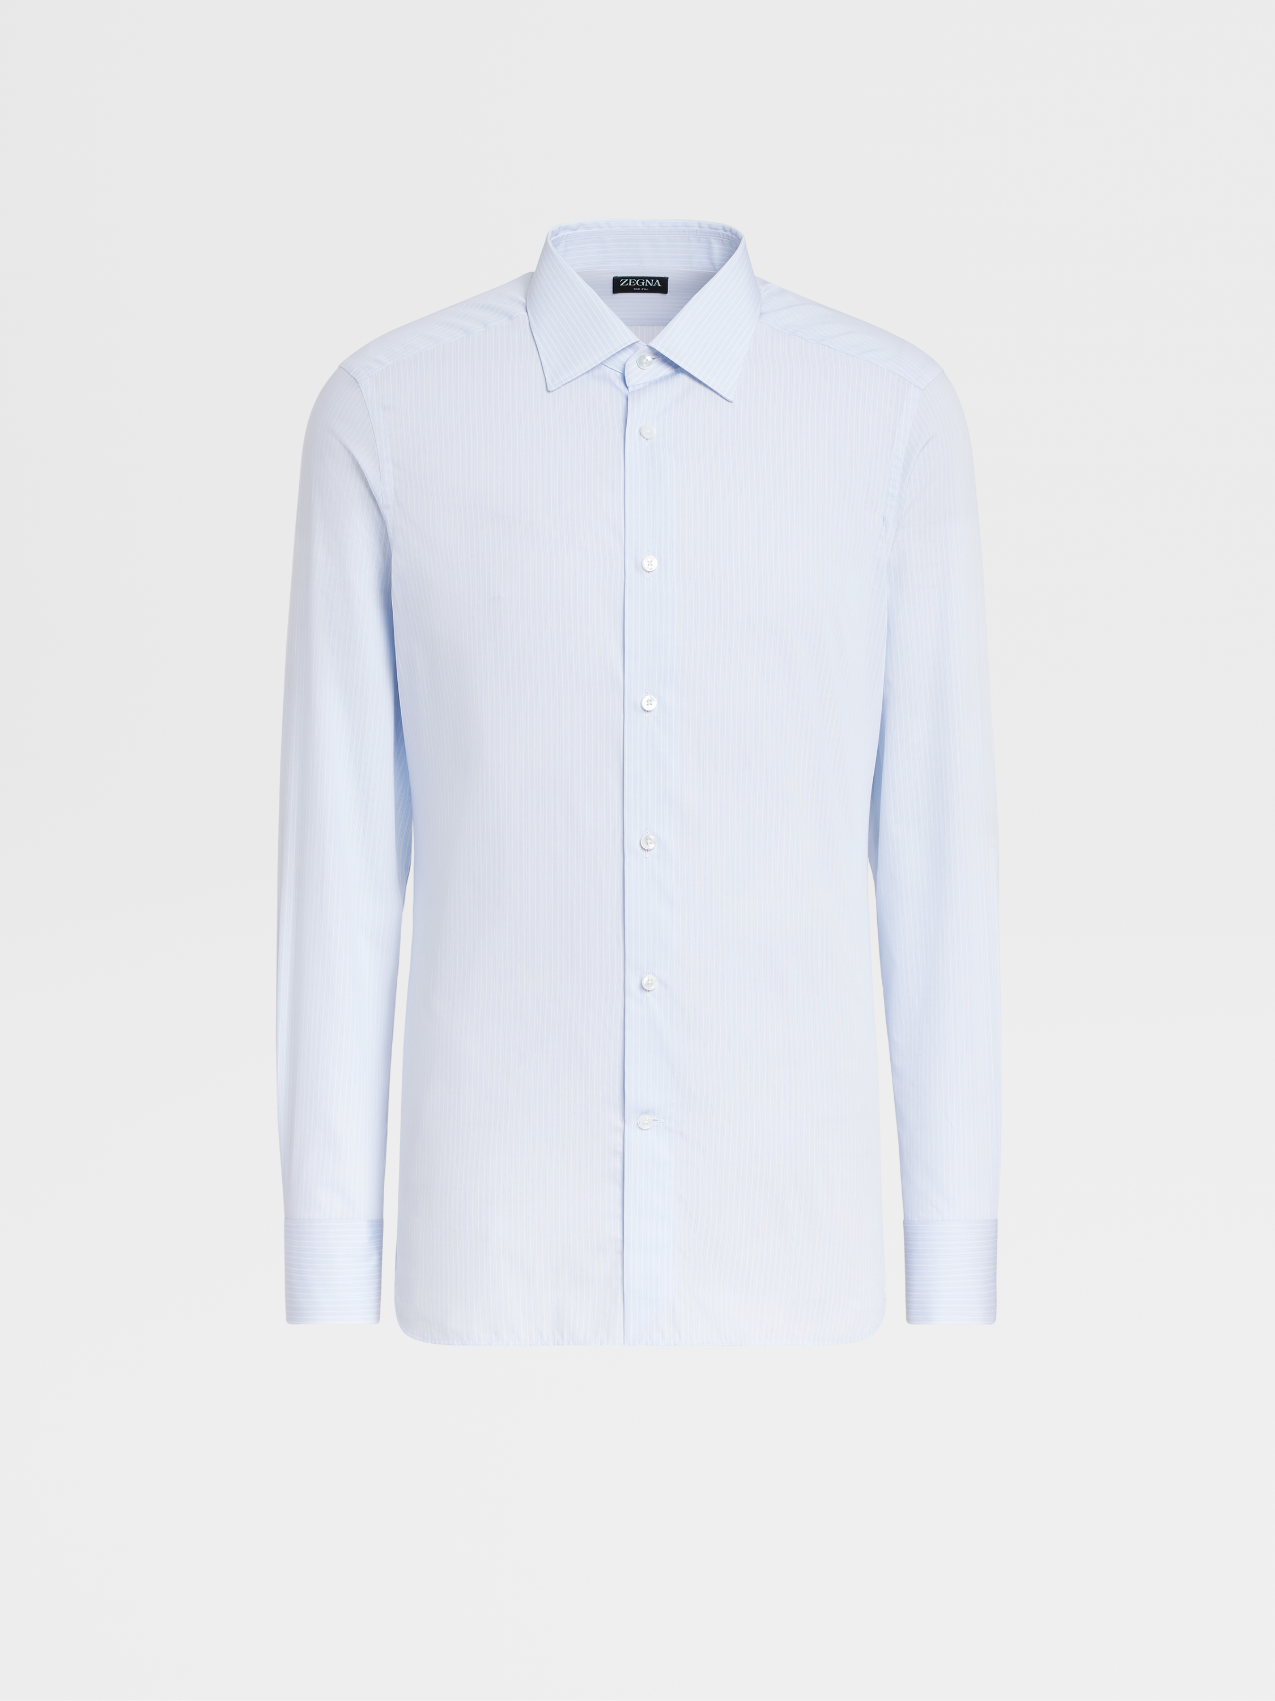 白色配浅蓝色细条纹 100fili 长袖精裁衬衫